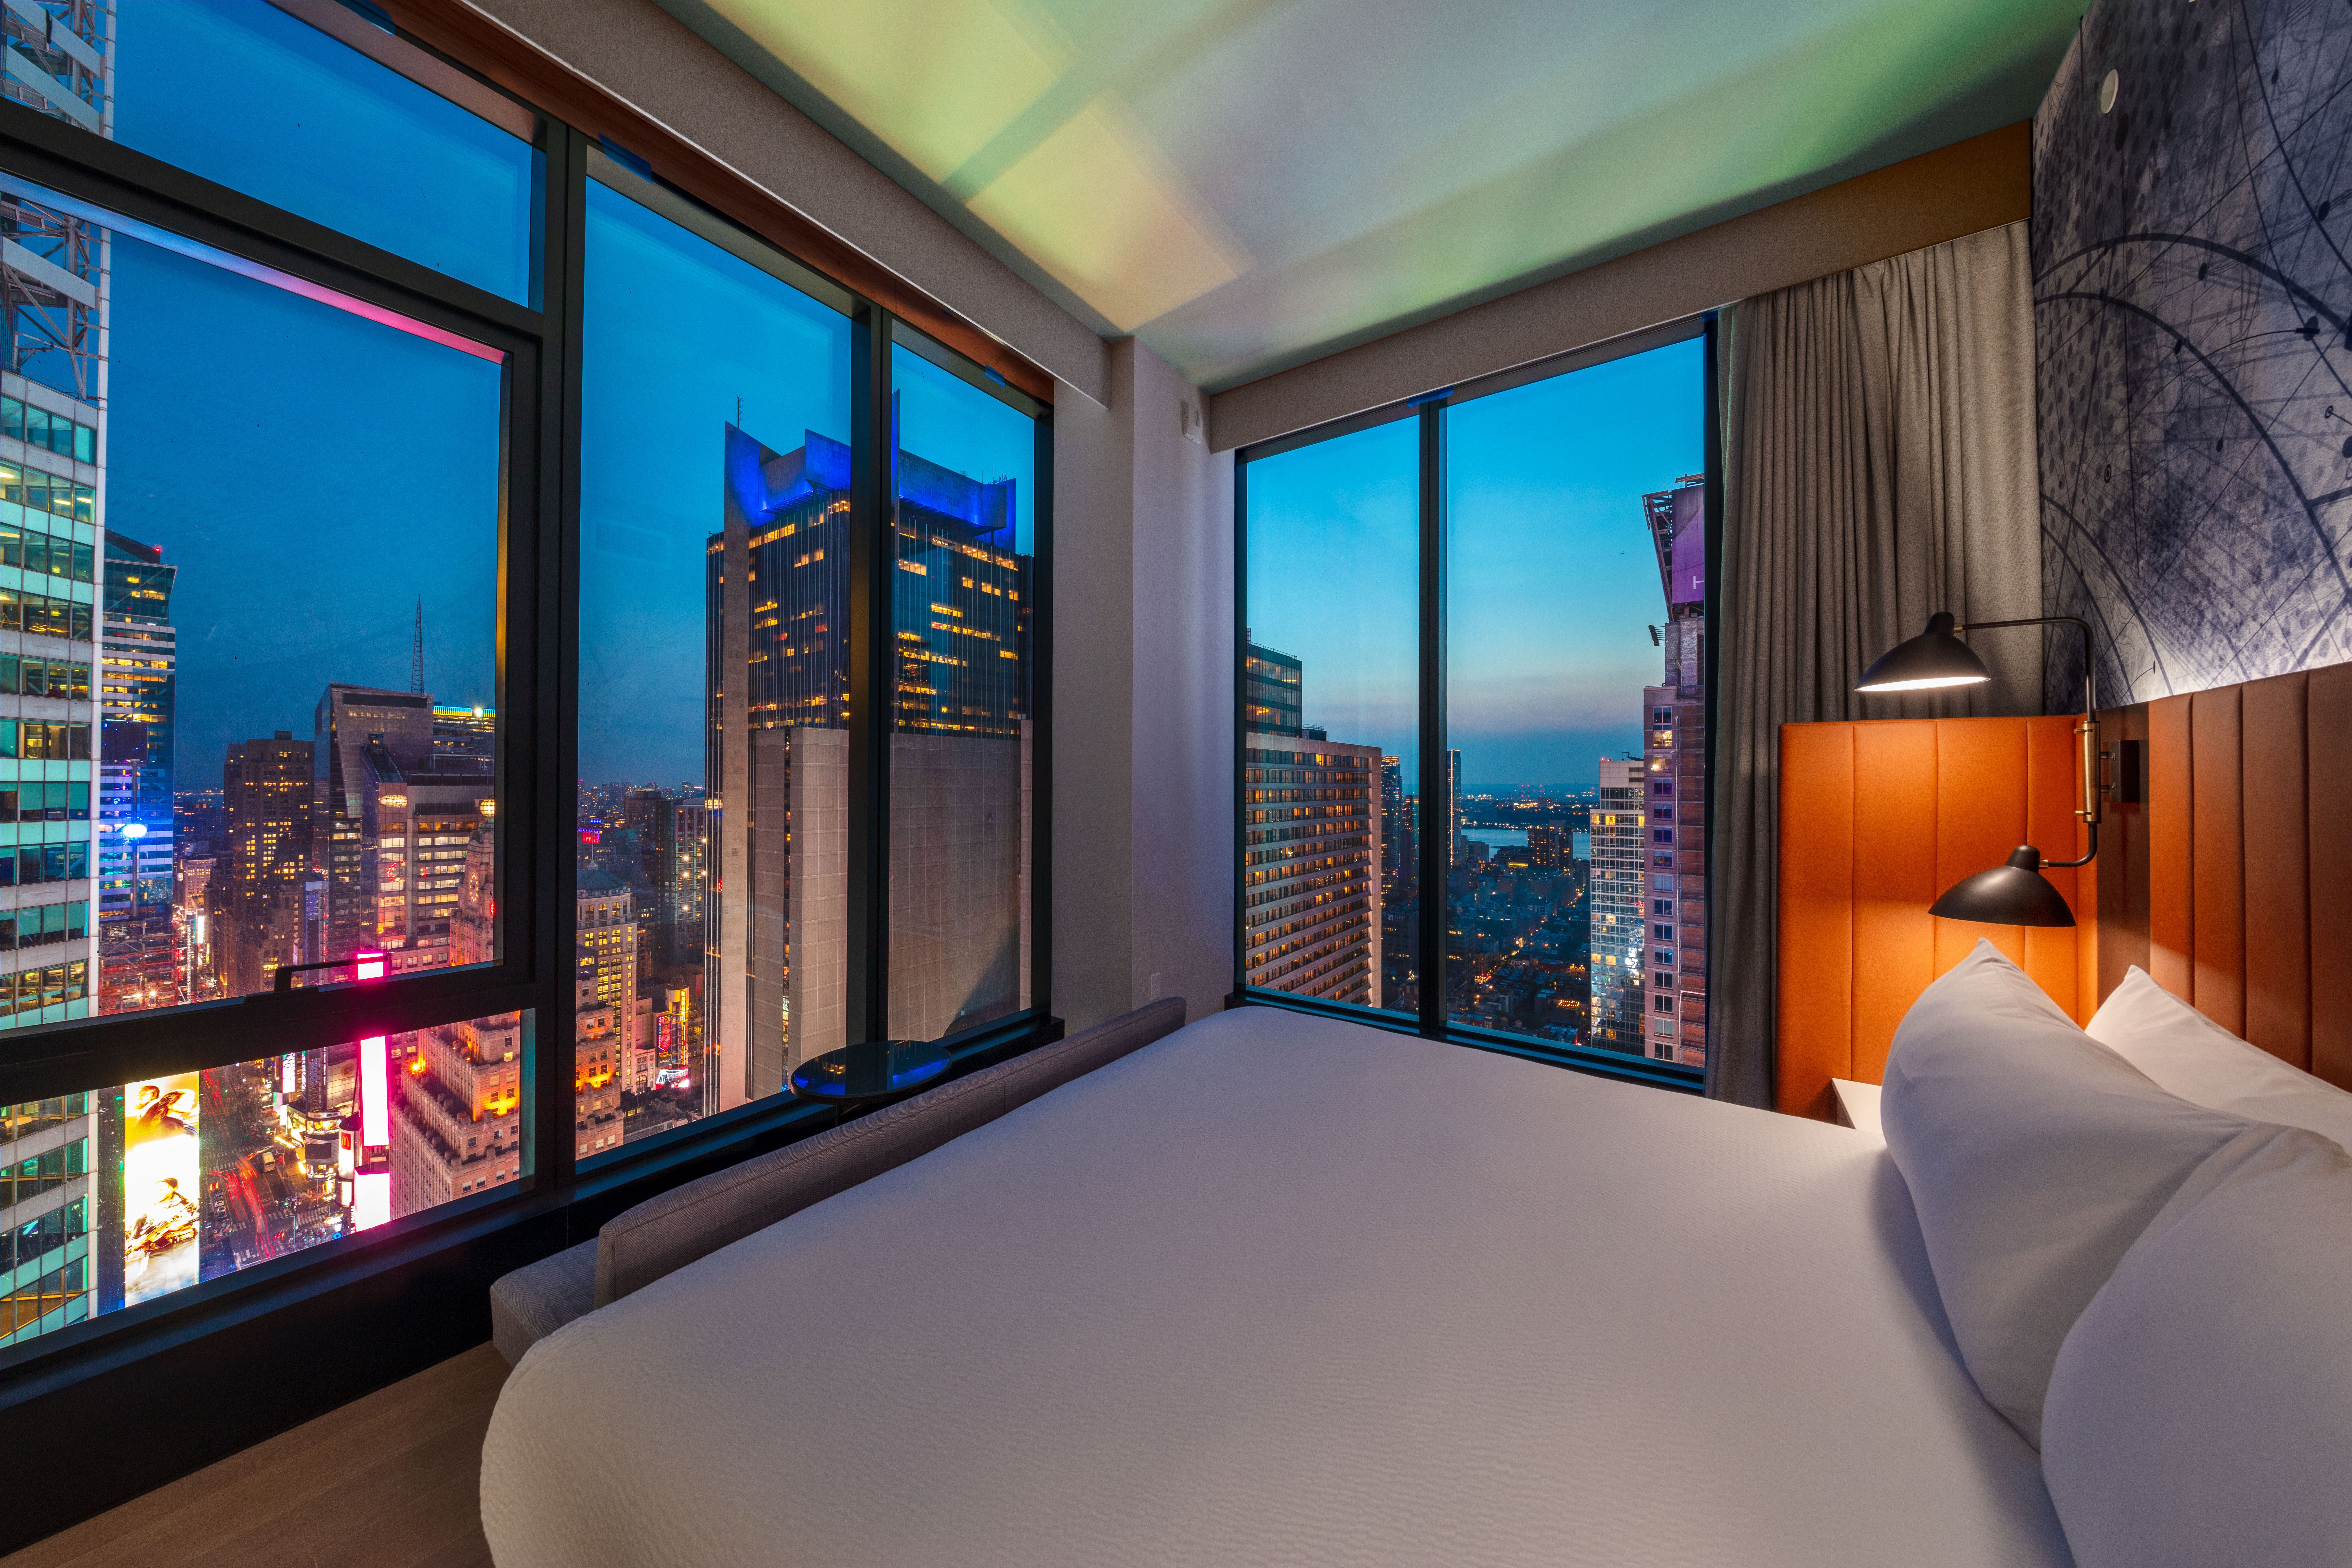 Tempo by Hilton TimesSquare es un hotel ubicado en una torre de 46 plantas